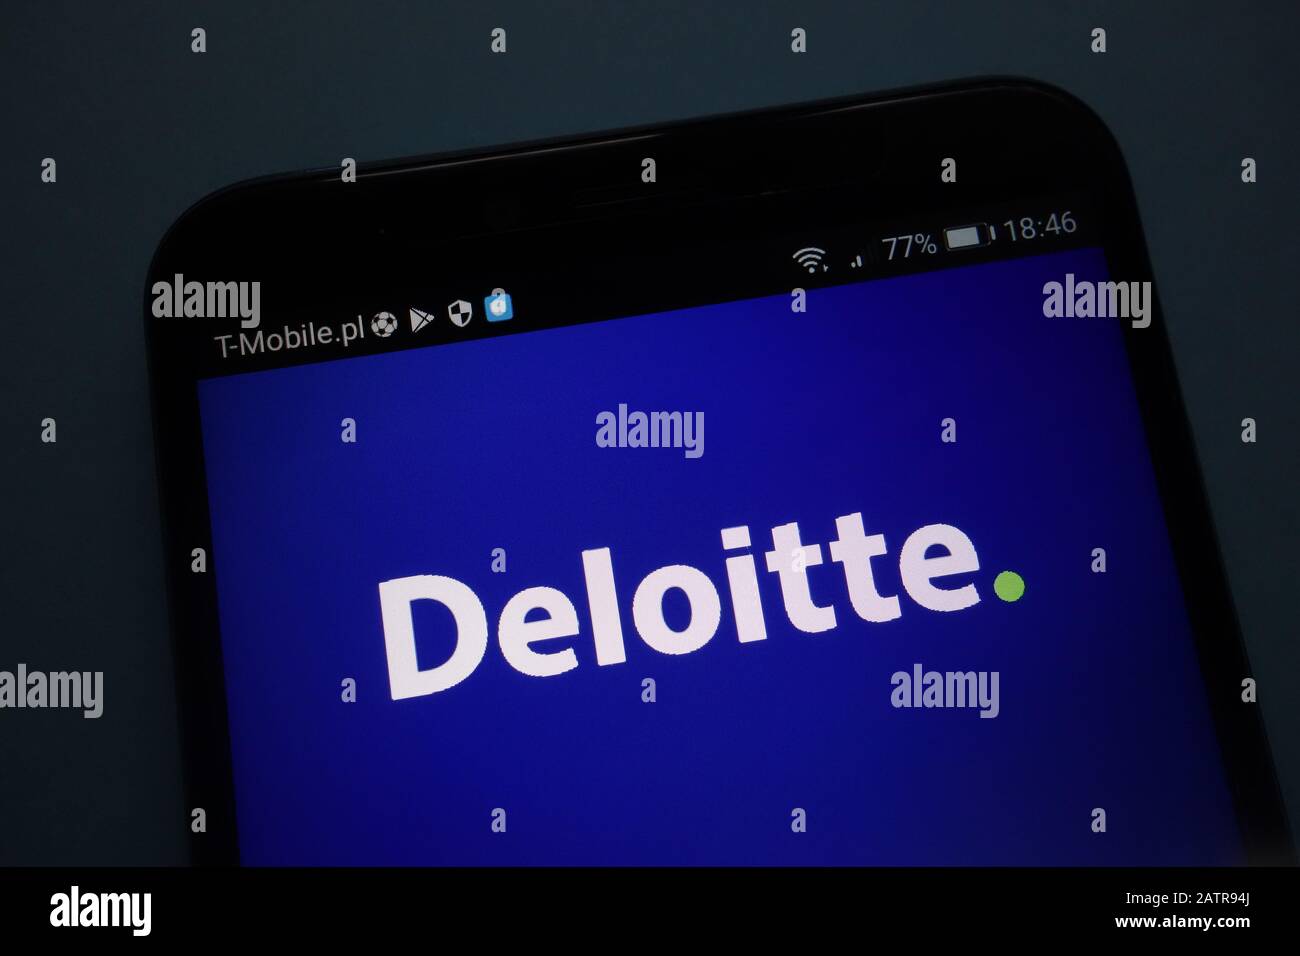 Deloitte logo immagini e fotografie stock ad alta risoluzione - Alamy